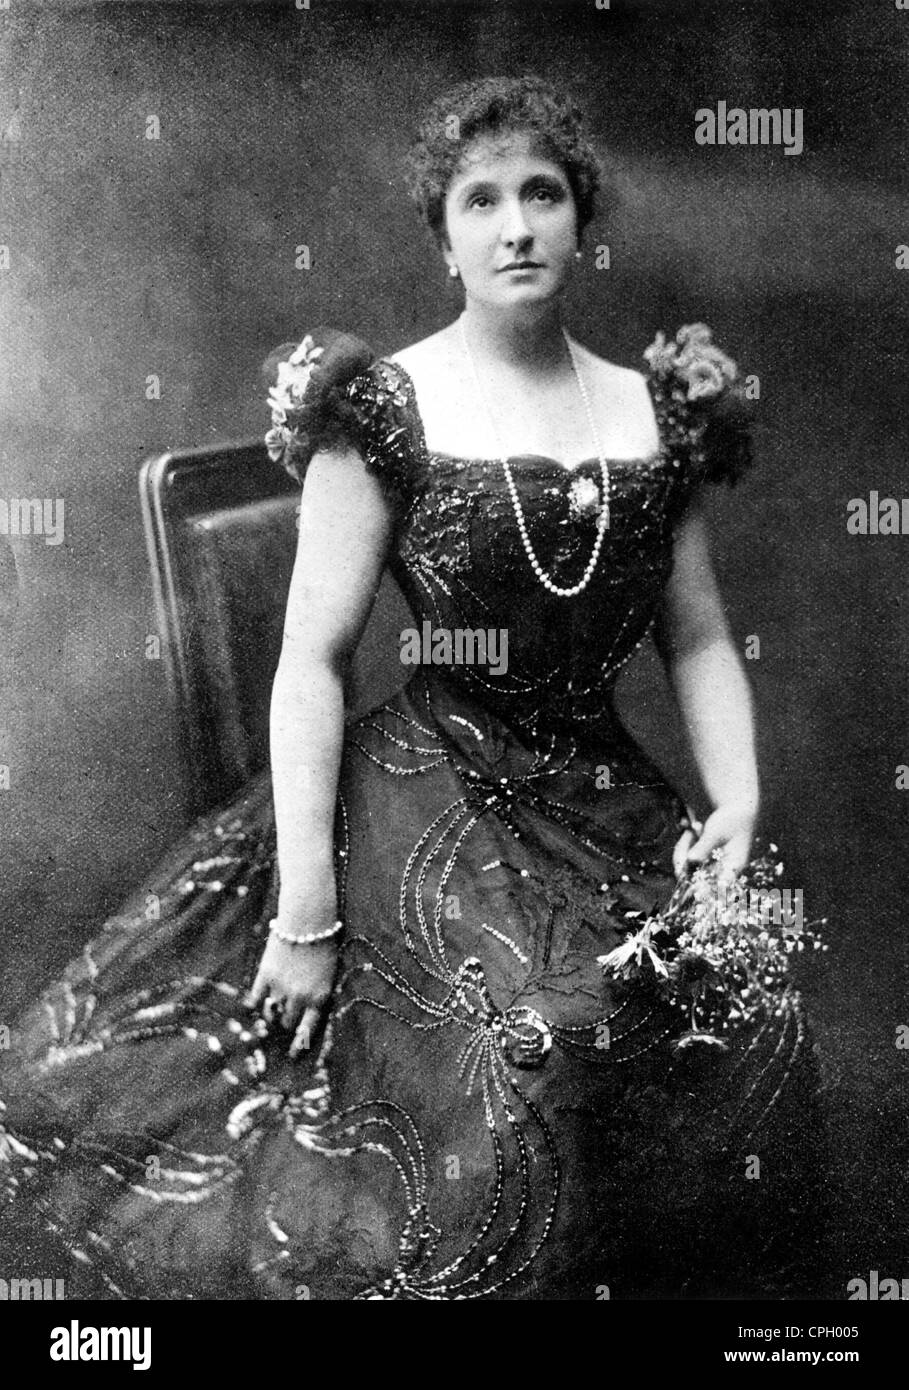 Melba, Nellie, 15.5.1861 - 23.2.1931, cantante d'opera australiana (Coloratura soprano), a metà lunghezza, circa alla fine del 19th secolo, Foto Stock